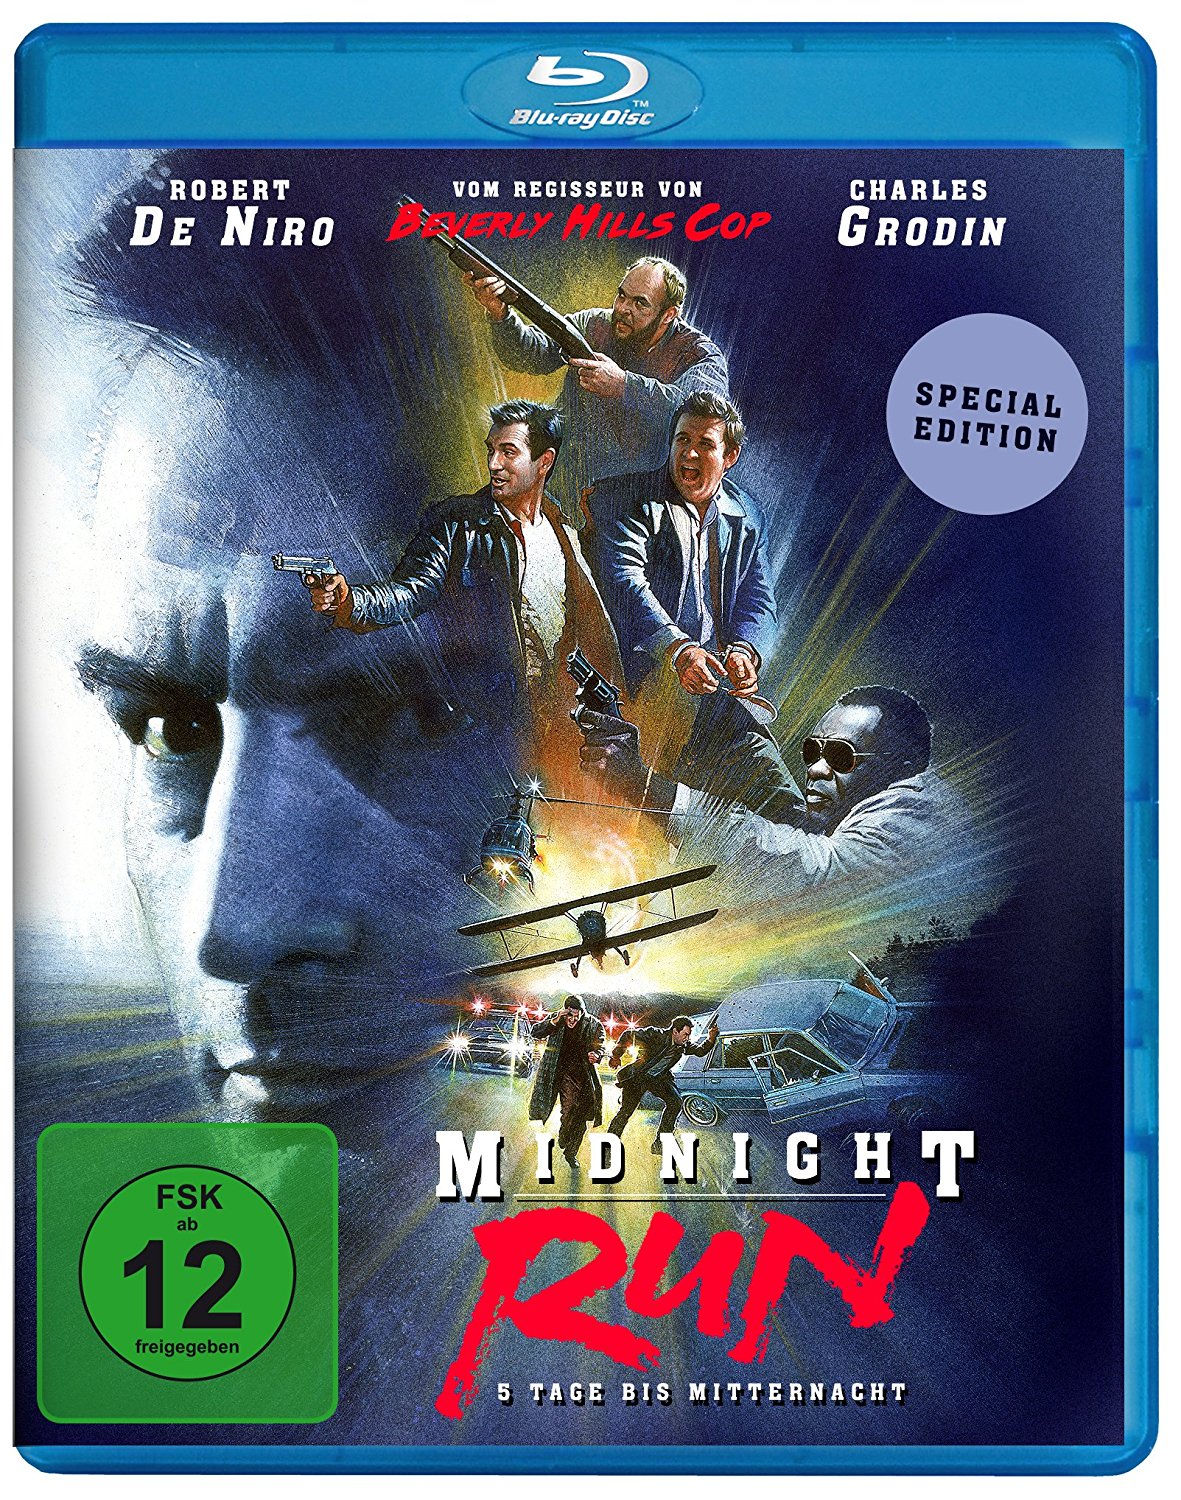 【Amazon】Midnight Run – 5 Tage bis Mitternacht [Blu-ray] [Special Edition] für 4,99 statt 10,97